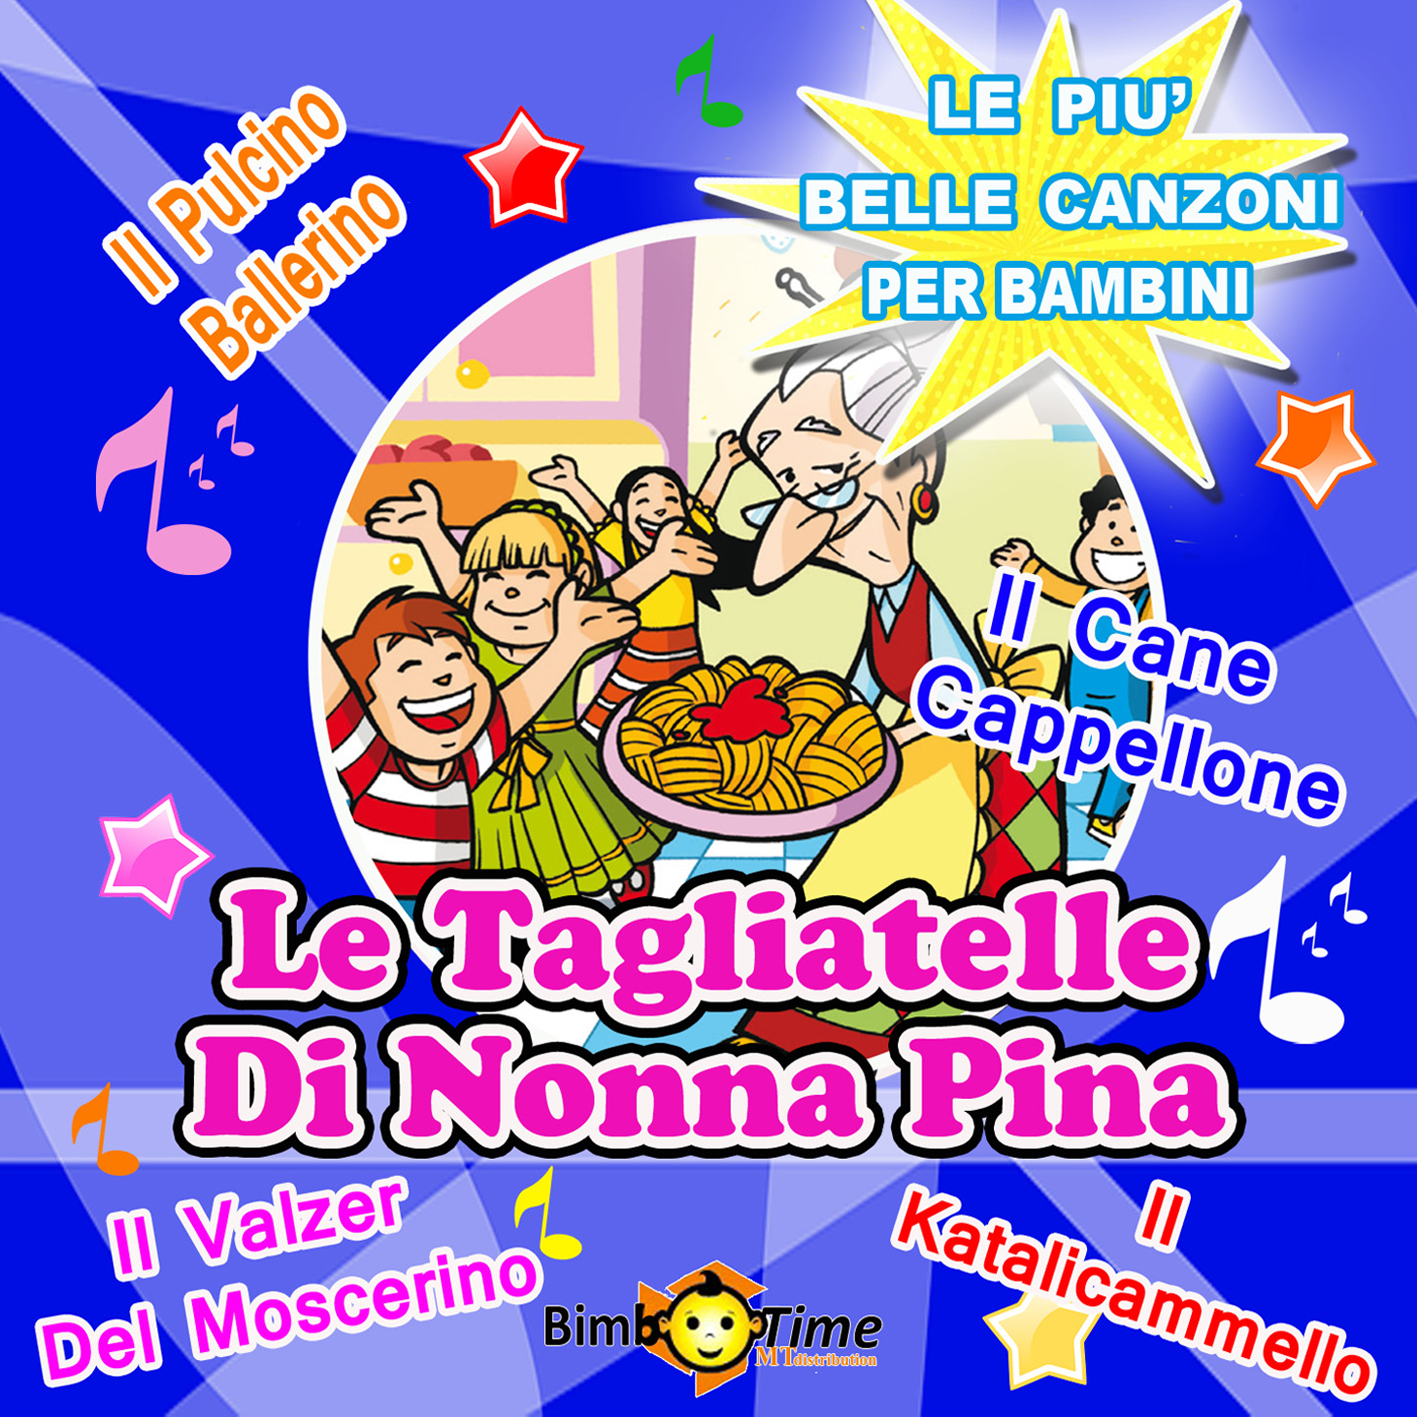 5 - Le Tagliatelle Di Nonna Pina - Il Katalicammello, Il Bullo Citrullo, Il Valzer Del Moscerino, Il Cane Capellone, And Other 10 Hits